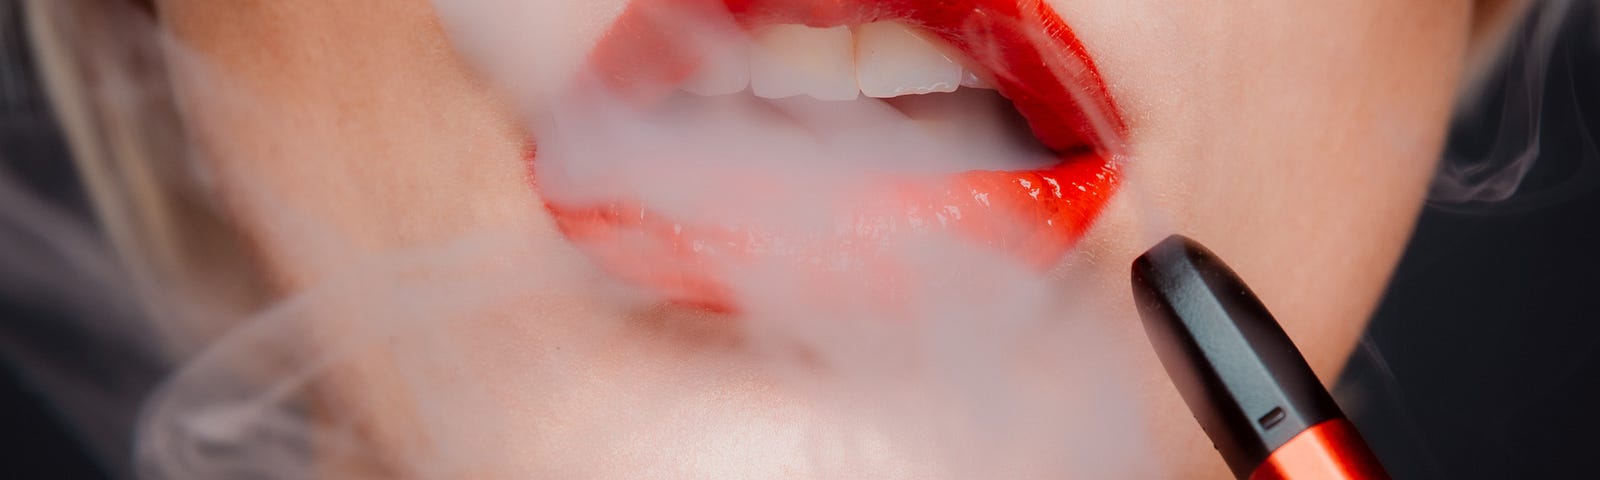 Woman smoking an e-cigarette.